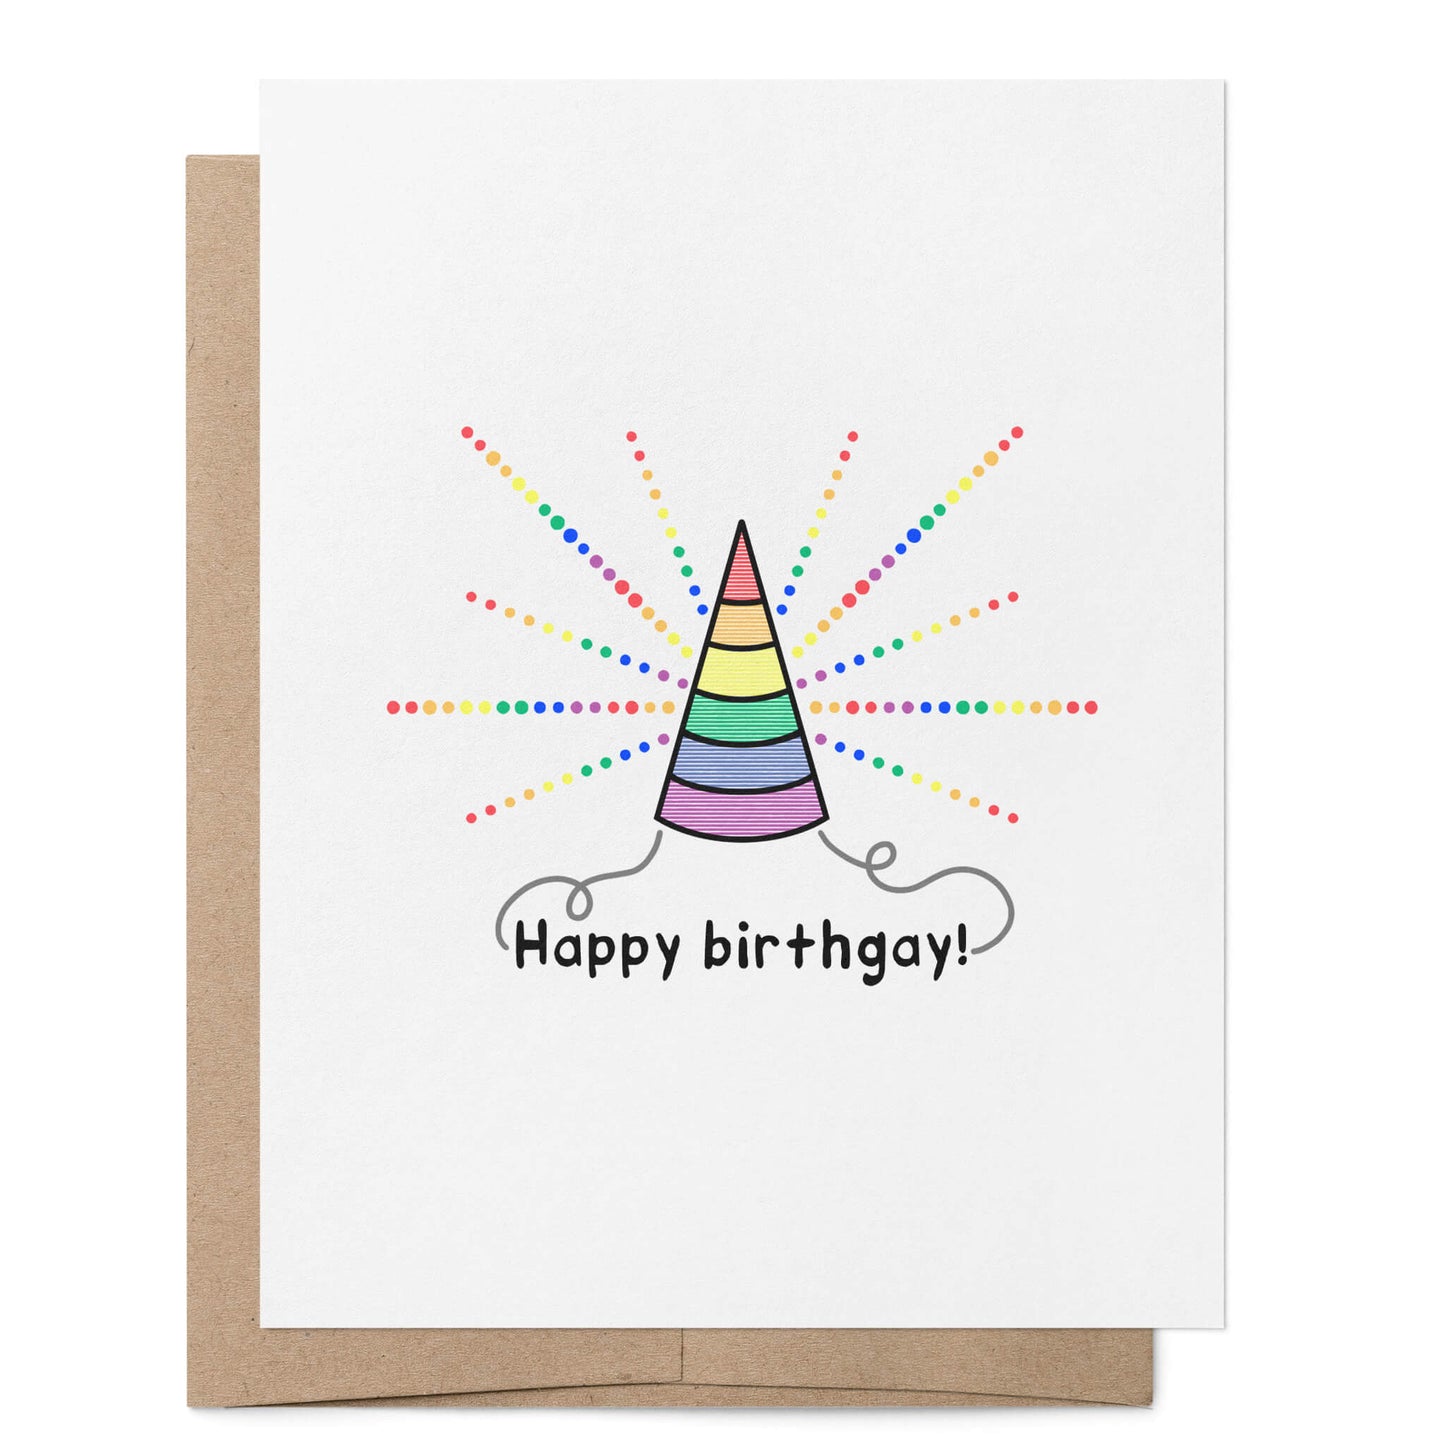 Happy Birthgay Card